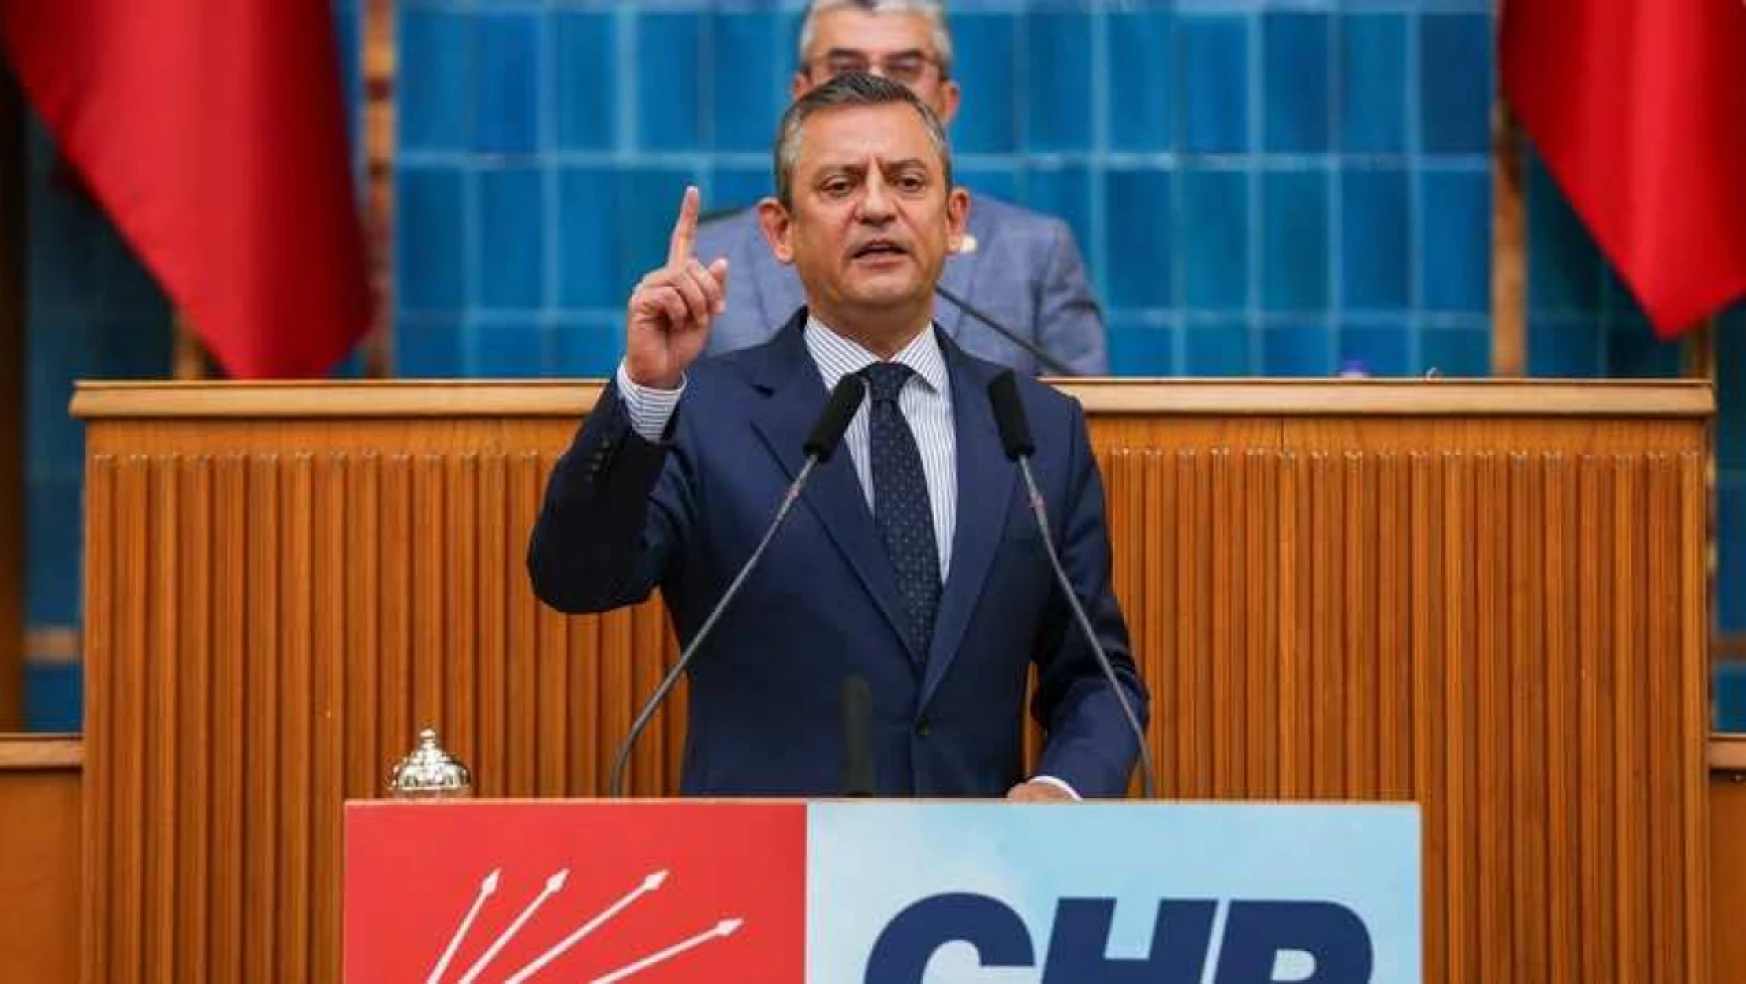 Halkın vergileri ile 6 bin kişi çalıştıran TRT'den açılım: CHP Grup Toplantısı sosyal medyadan yayınlandı